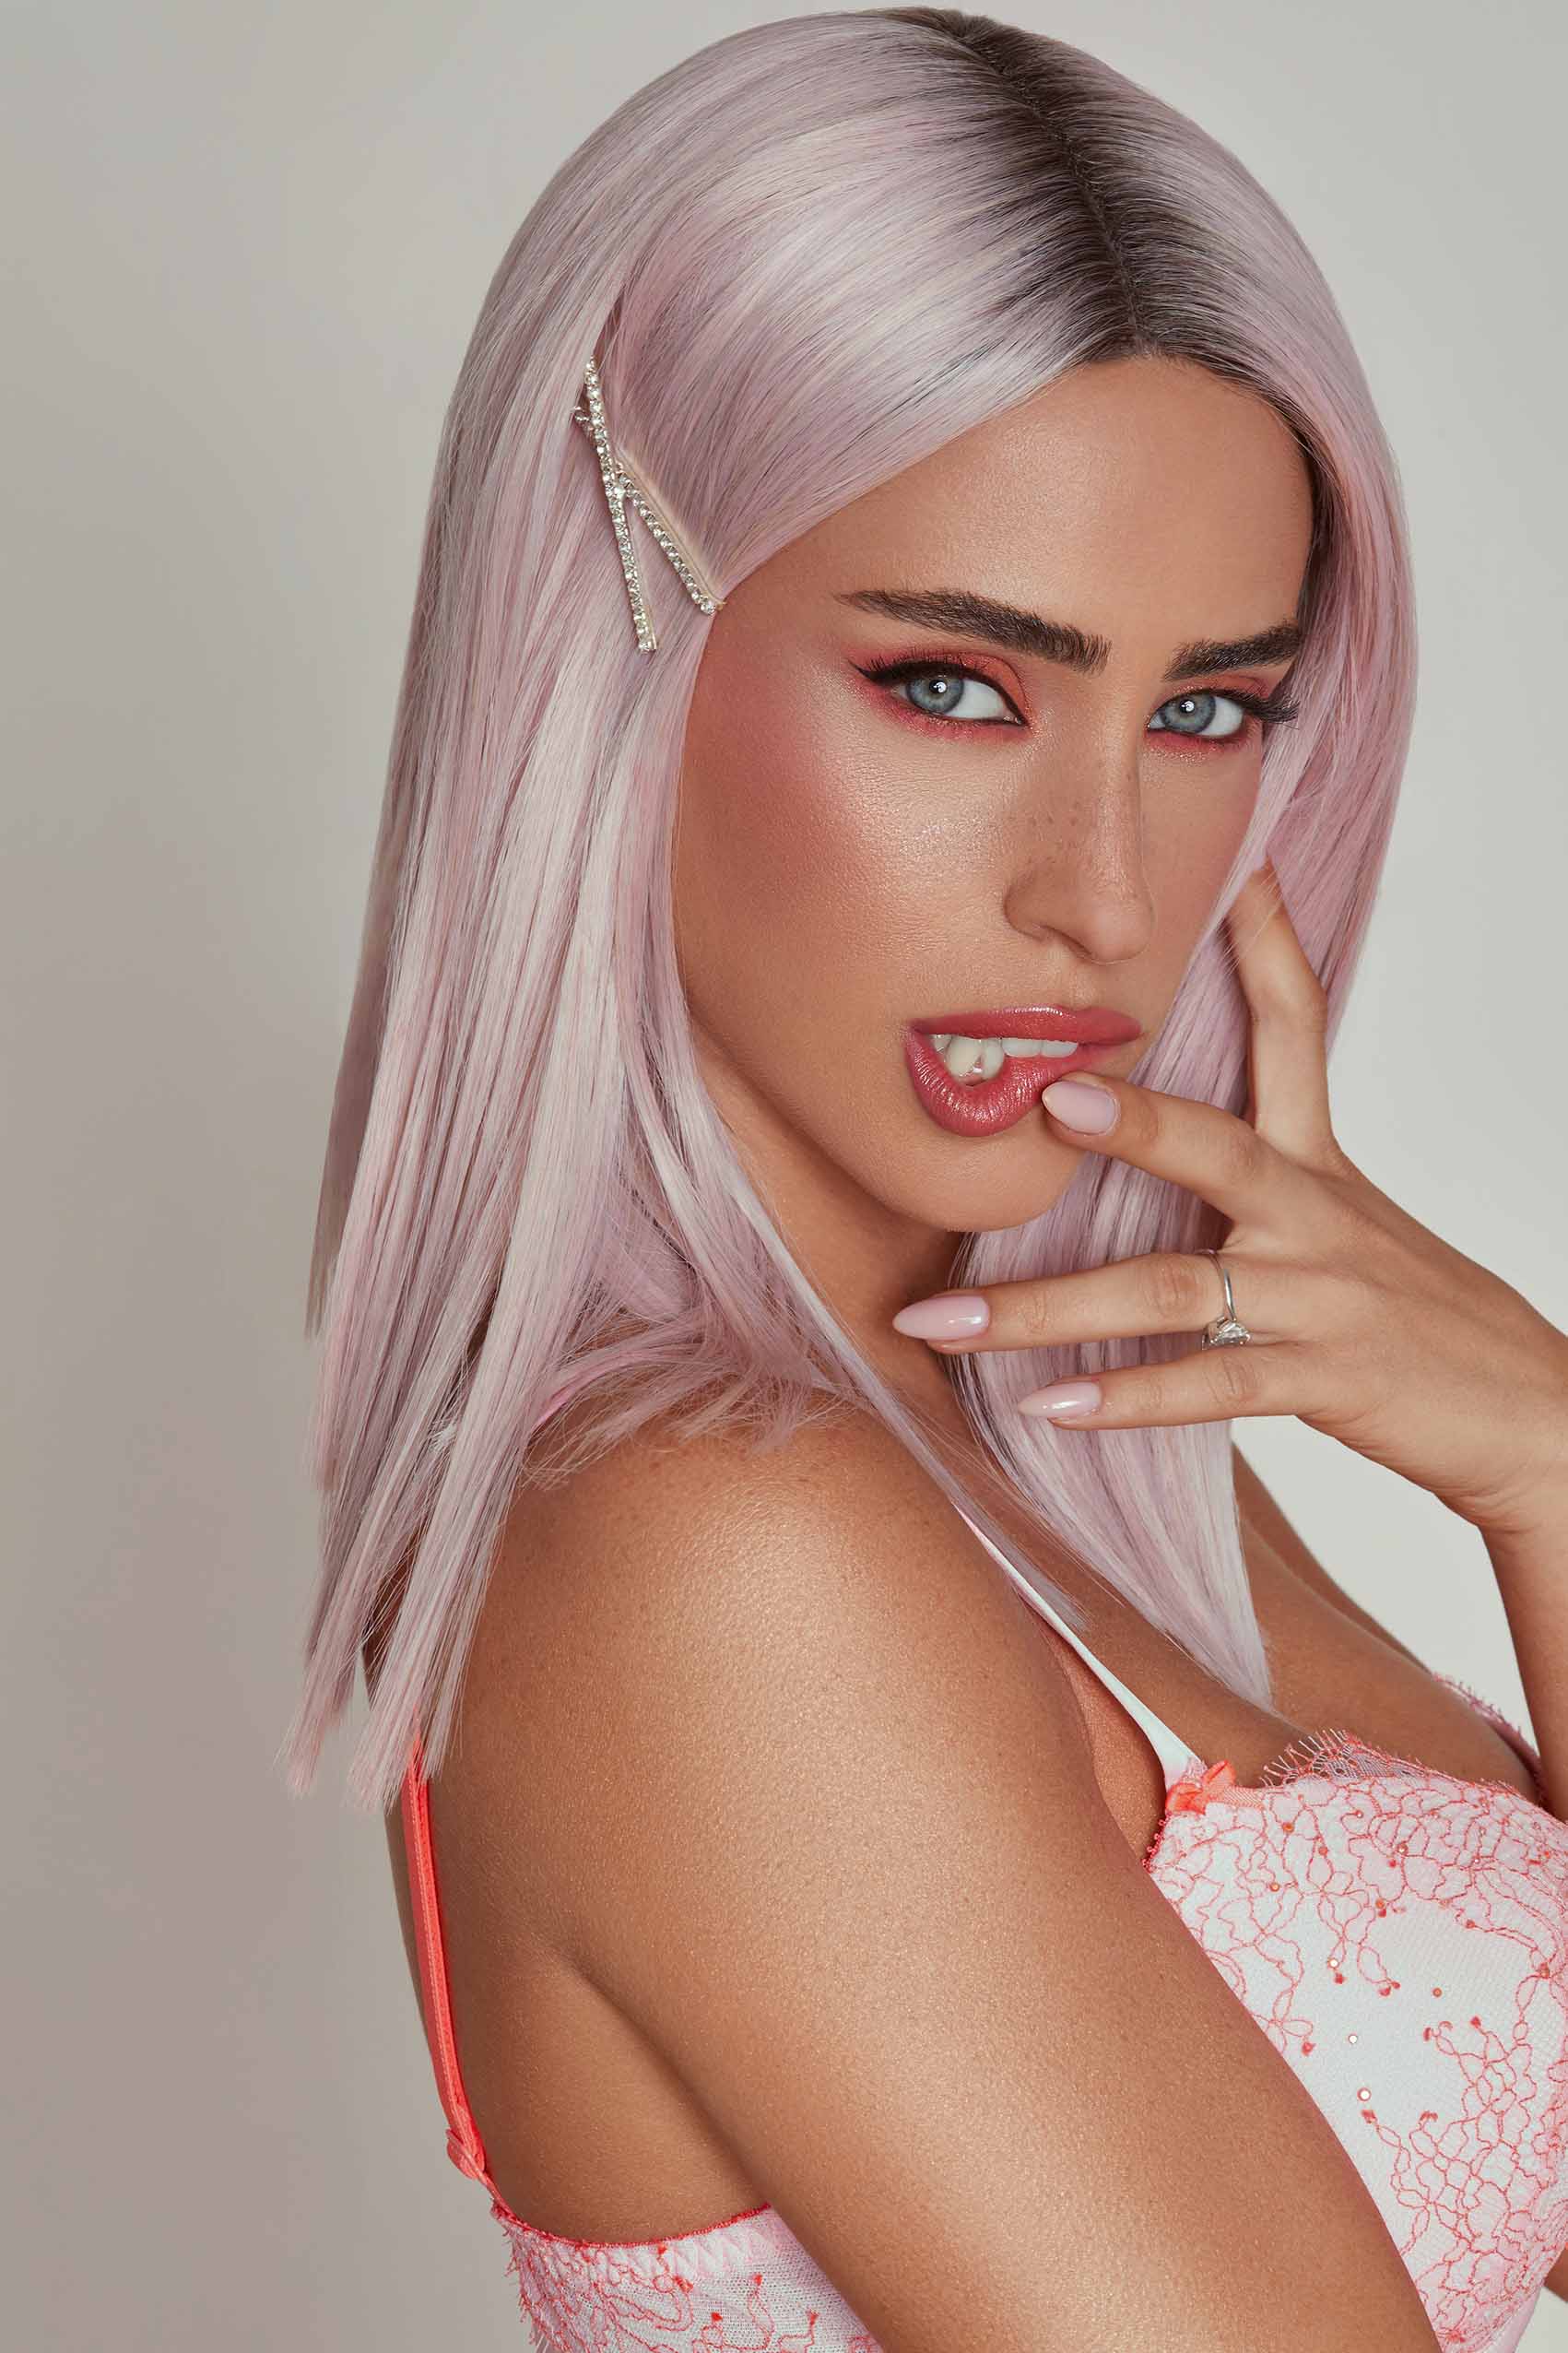 צילום: shay kahzam, איפור: yael mesika, דוגמנית: bar perez, שיער: shayhel difani - shayhal_difani, פאות: chani yanay - מגזין אופנה ישראלי -15